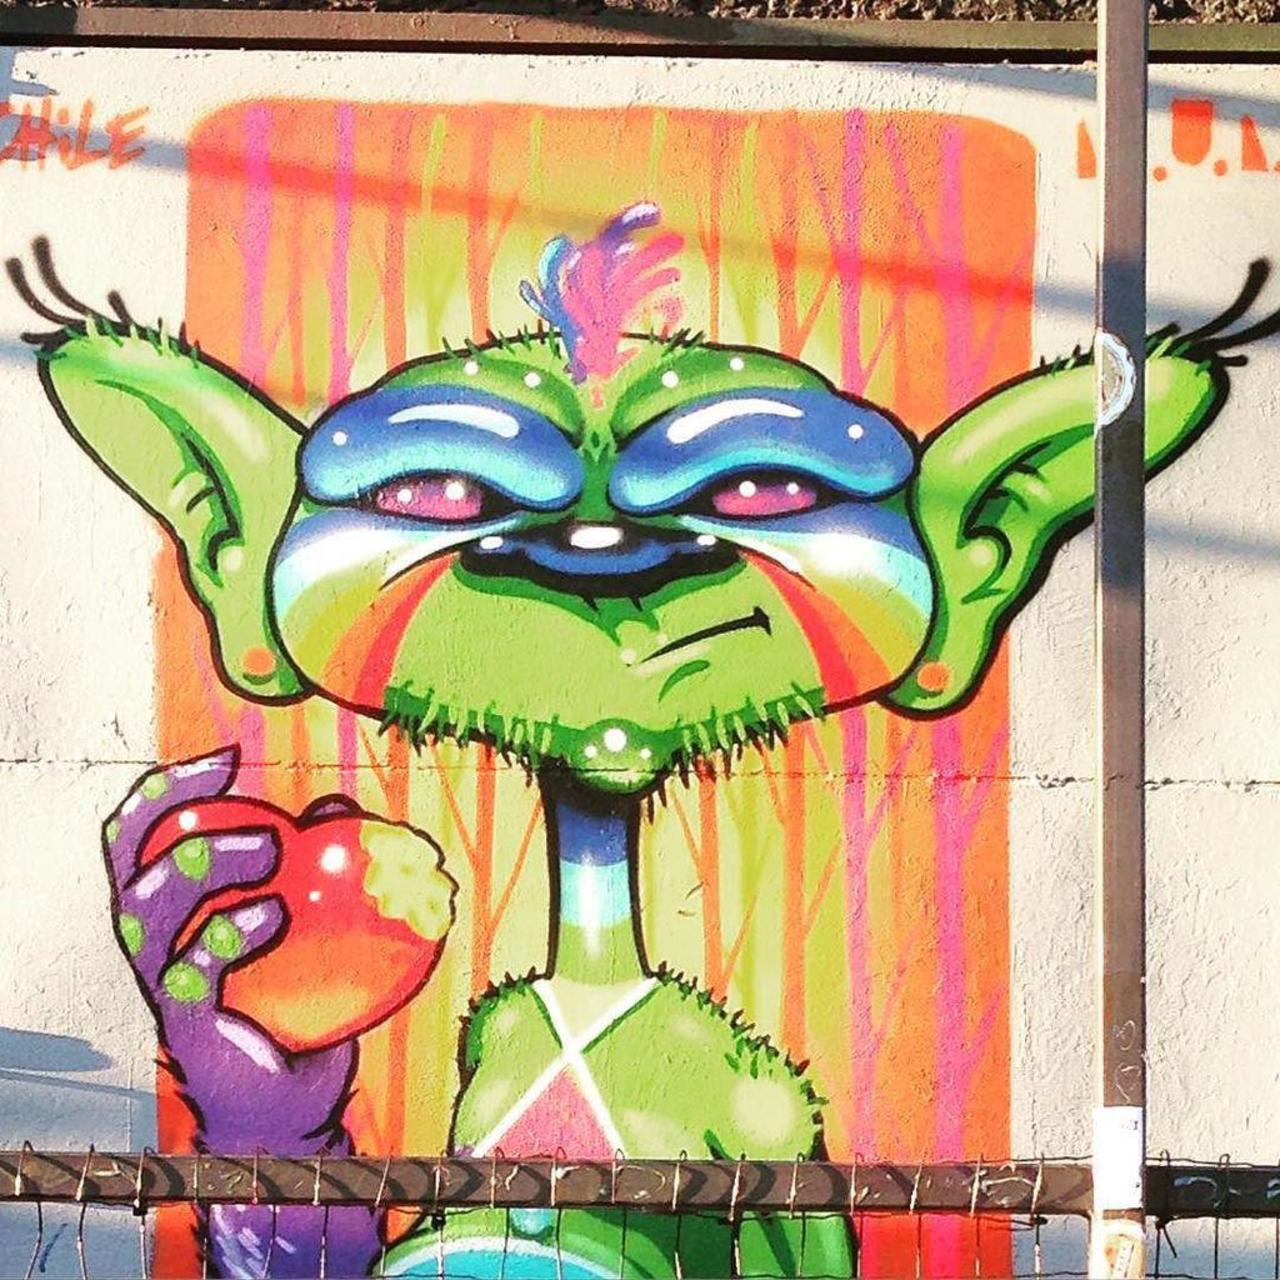 #berlinstreetart #streetartberlin #streetart #rsa_graffiti #tv_streetart #dsb_graff #dopeshotbro #graffiti #graff #… http://t.co/U8wBQ3BC8X